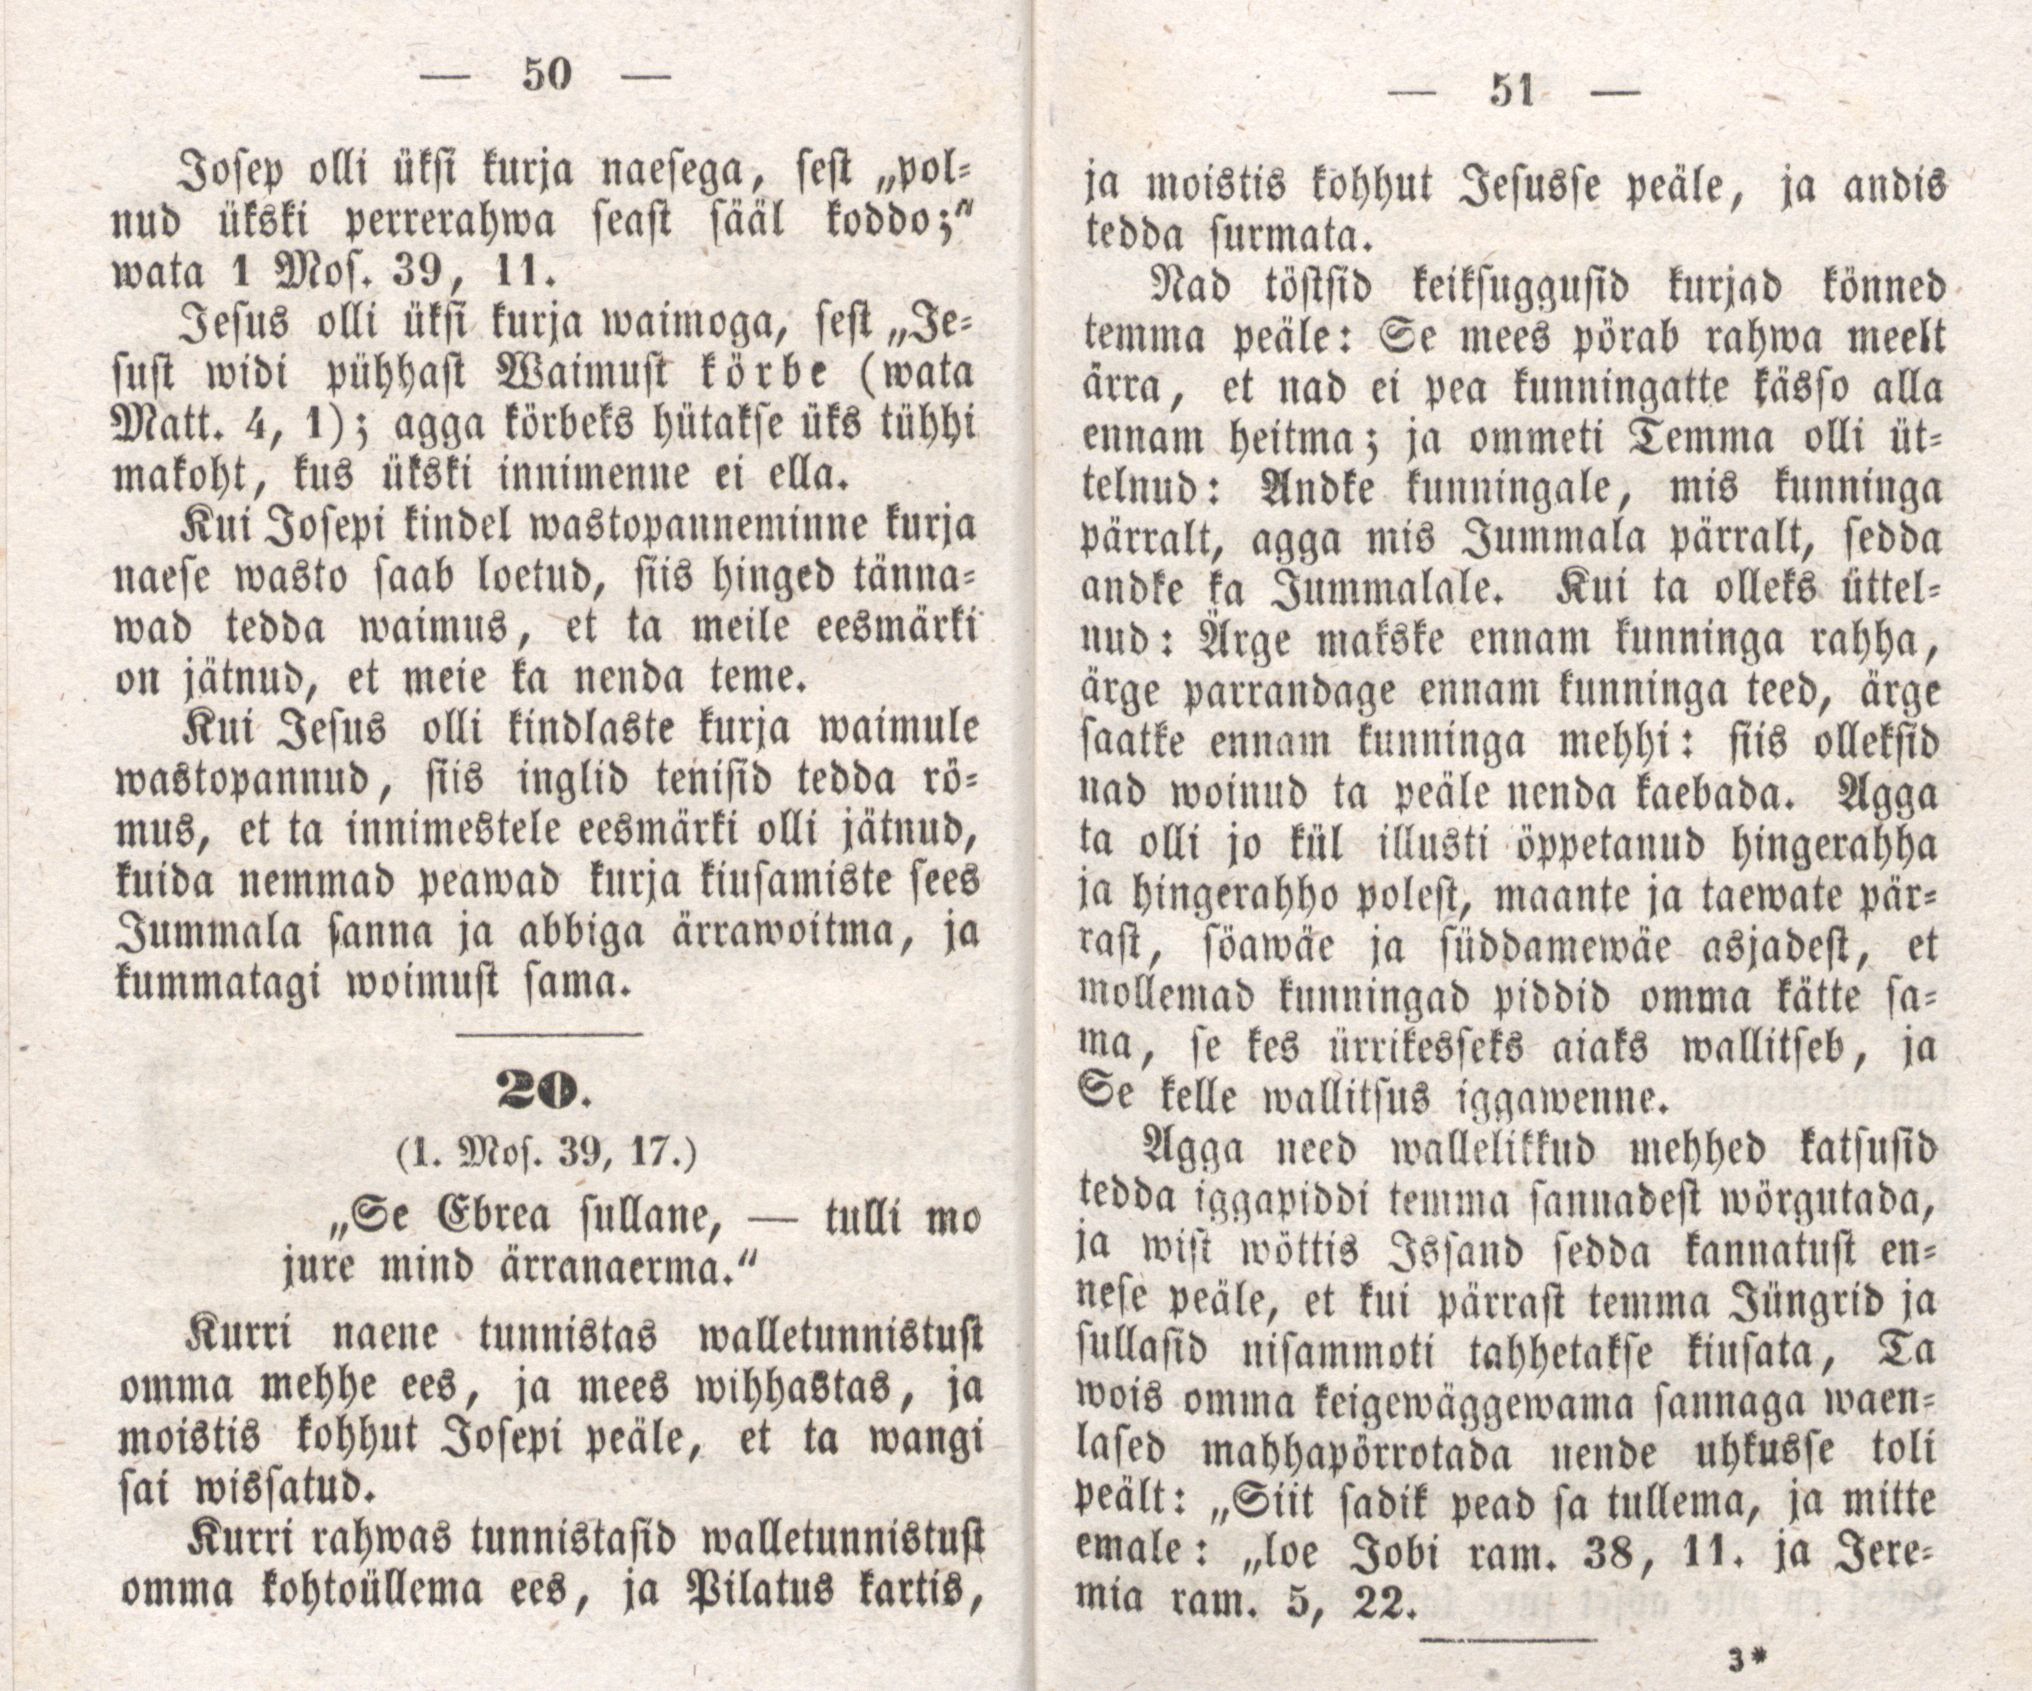 Josepi elloramat (1850) | 28. (50-51) Main body of text